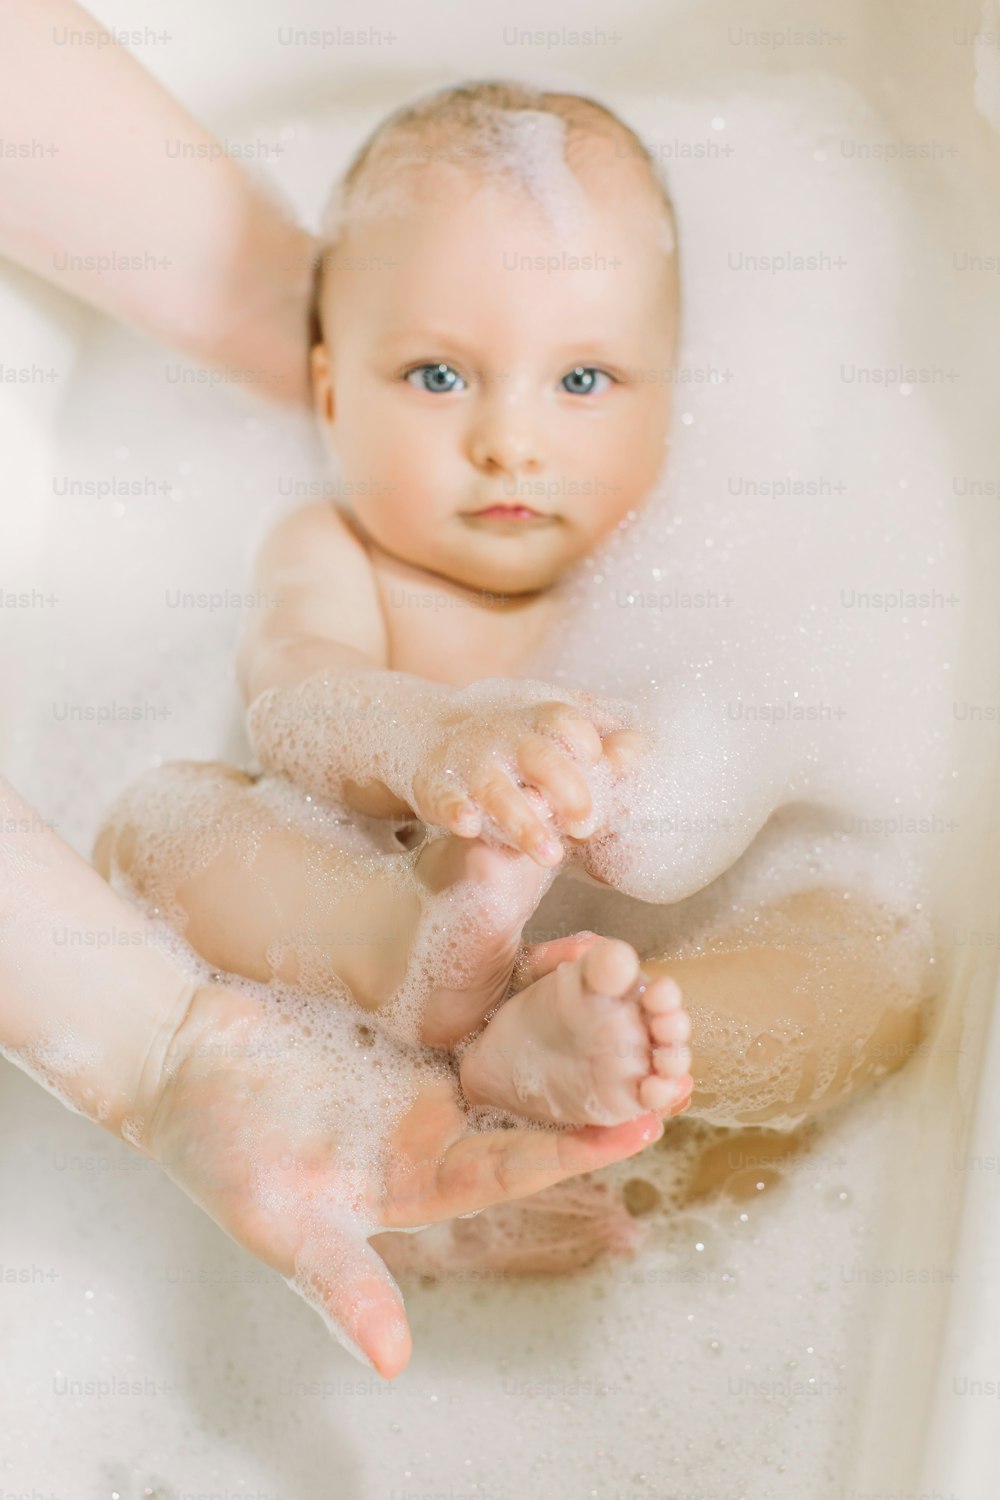 Bambino felice che ride facendo il bagno giocando con le bolle di schiuma. Bambino piccolo in una vasca da bagno. Lavaggio e bagnetto dei neonati. Igiene e cura dei bambini piccoli. Bagnetto neonato